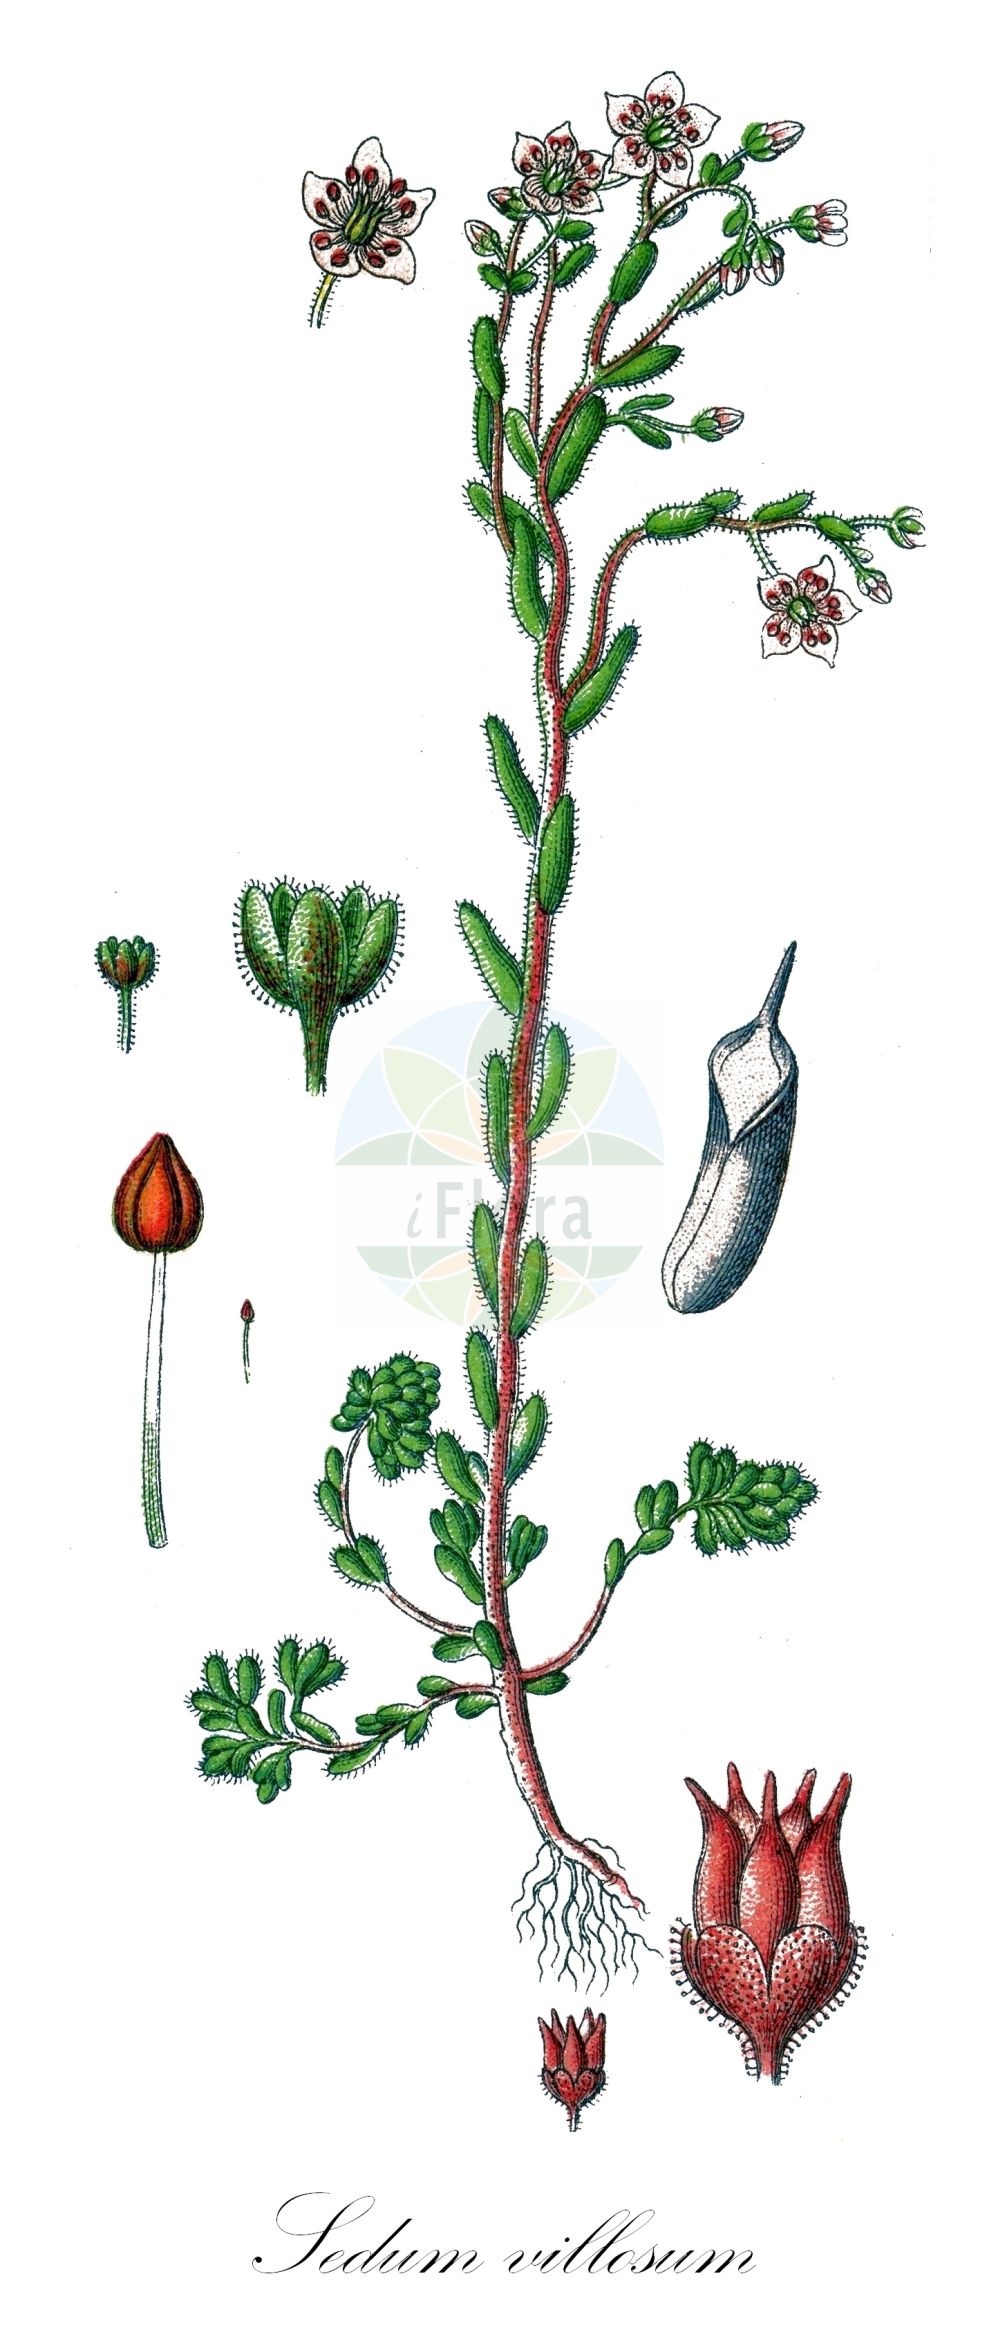 Historische Abbildung von Sedum villosum (Sumpf-Fetthenne - Hairy Stonecrop). Das Bild zeigt Blatt, Bluete, Frucht und Same. ---- Historical Drawing of Sedum villosum (Sumpf-Fetthenne - Hairy Stonecrop). The image is showing leaf, flower, fruit and seed.(Sedum villosum,Sumpf-Fetthenne,Hairy Stonecrop,Oreosedum villosum,Sedum pentandrum,Sedum villosum,Sedum villosum L. var.,Sumpf-Fetthenne,Druesen-Mauerpfeffer,Moor-Mauerpfeffer,Hairy Stonecrop,Purple Stonecrop,Sedum,Fetthenne,Stonecrop,Crassulaceae,Dickblattgewächse,Stonecrop family,Blatt,Bluete,Frucht,Same,leaf,flower,fruit,seed,Sturm (1796f))